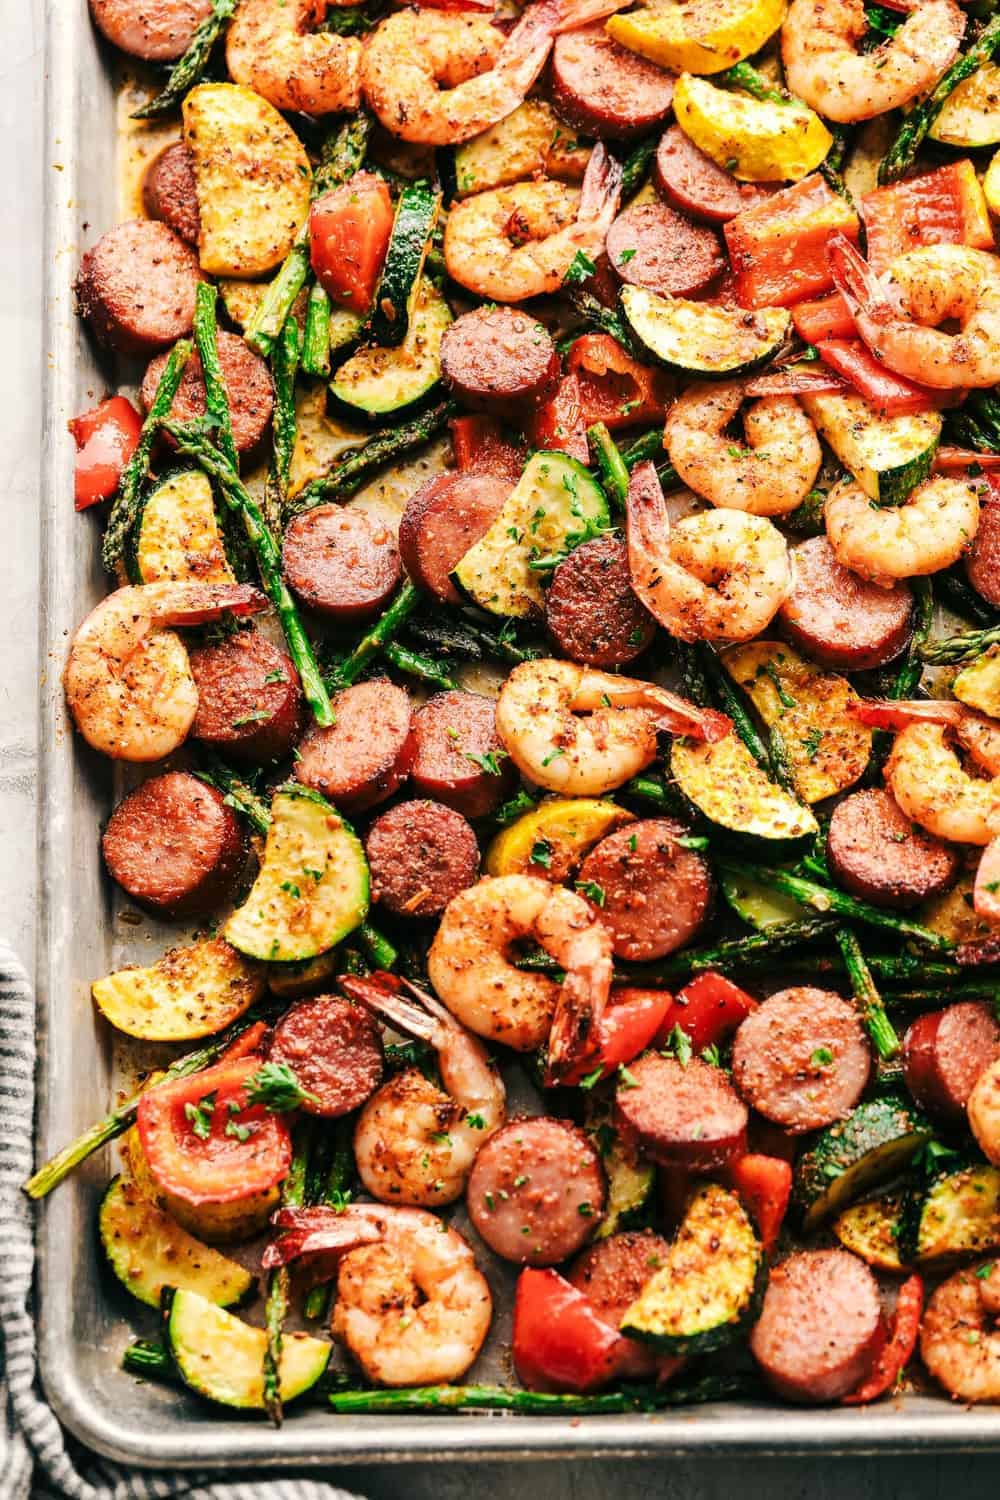 Cajun shrimp and sausage with veggies on a sheet pan